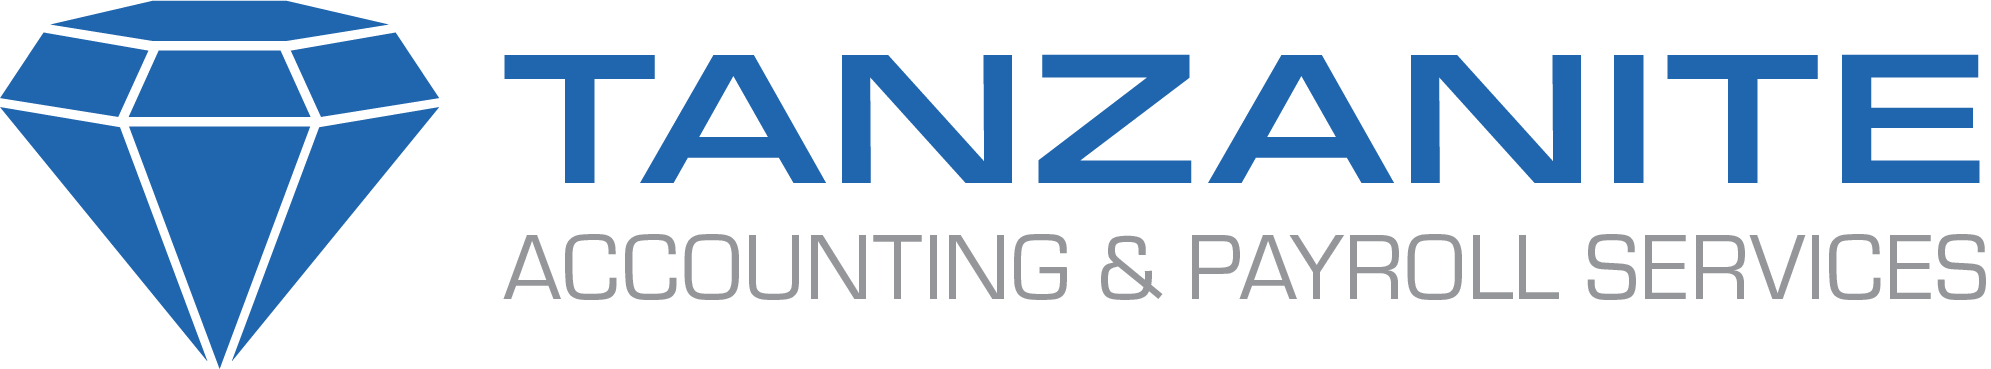 Tanzanite Accounting & Payroll Services